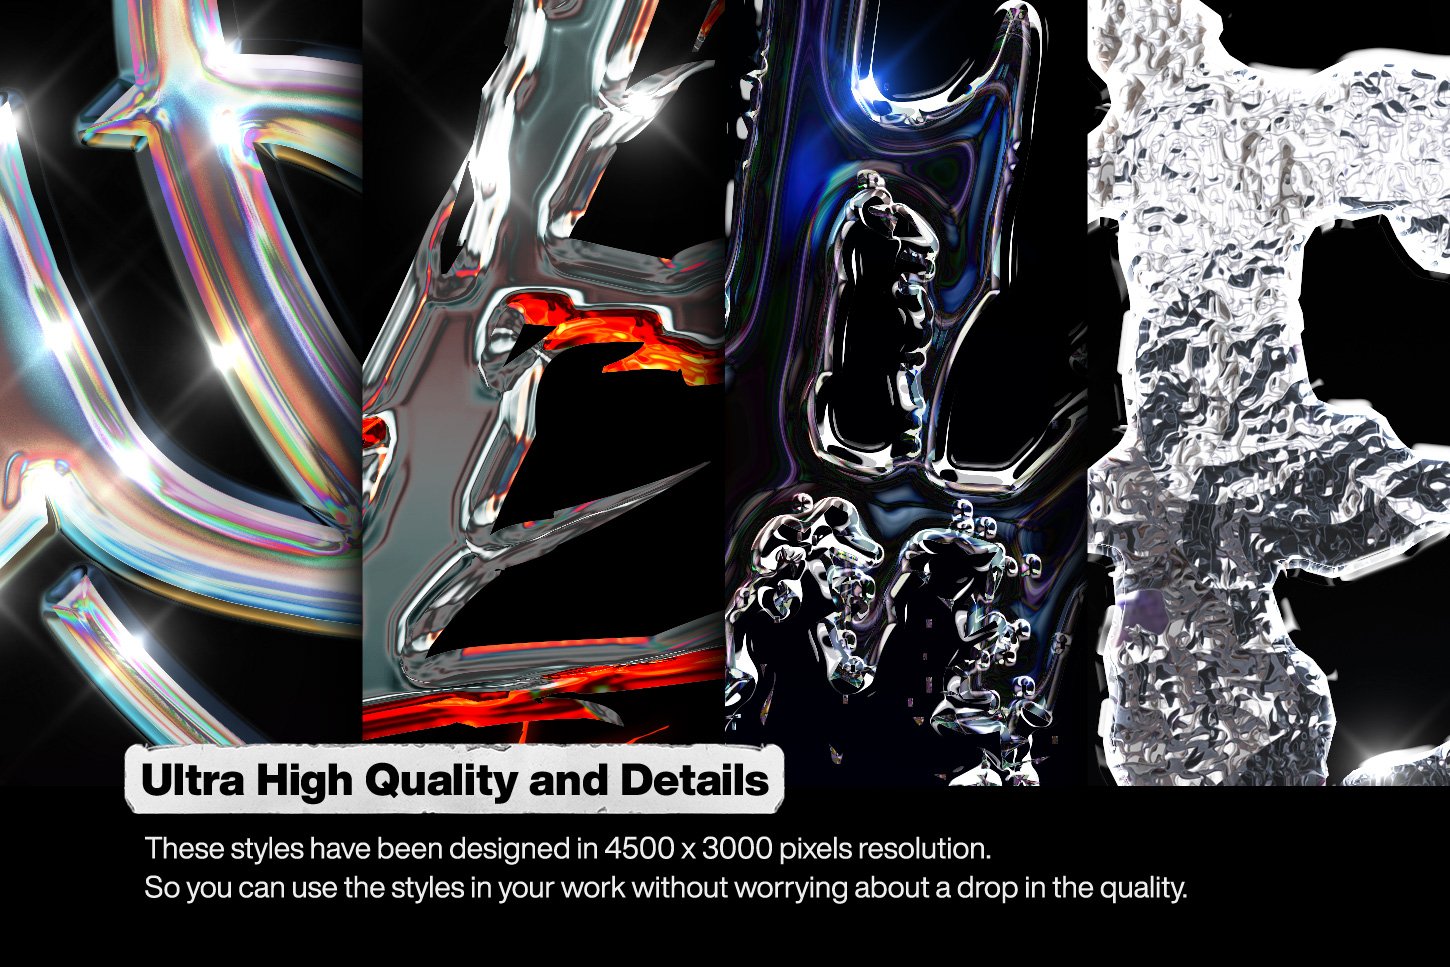 Chrome 10个新潮金属酸性镀铬风格设计PSD图层样式 Pack 03 图片素材 第2张